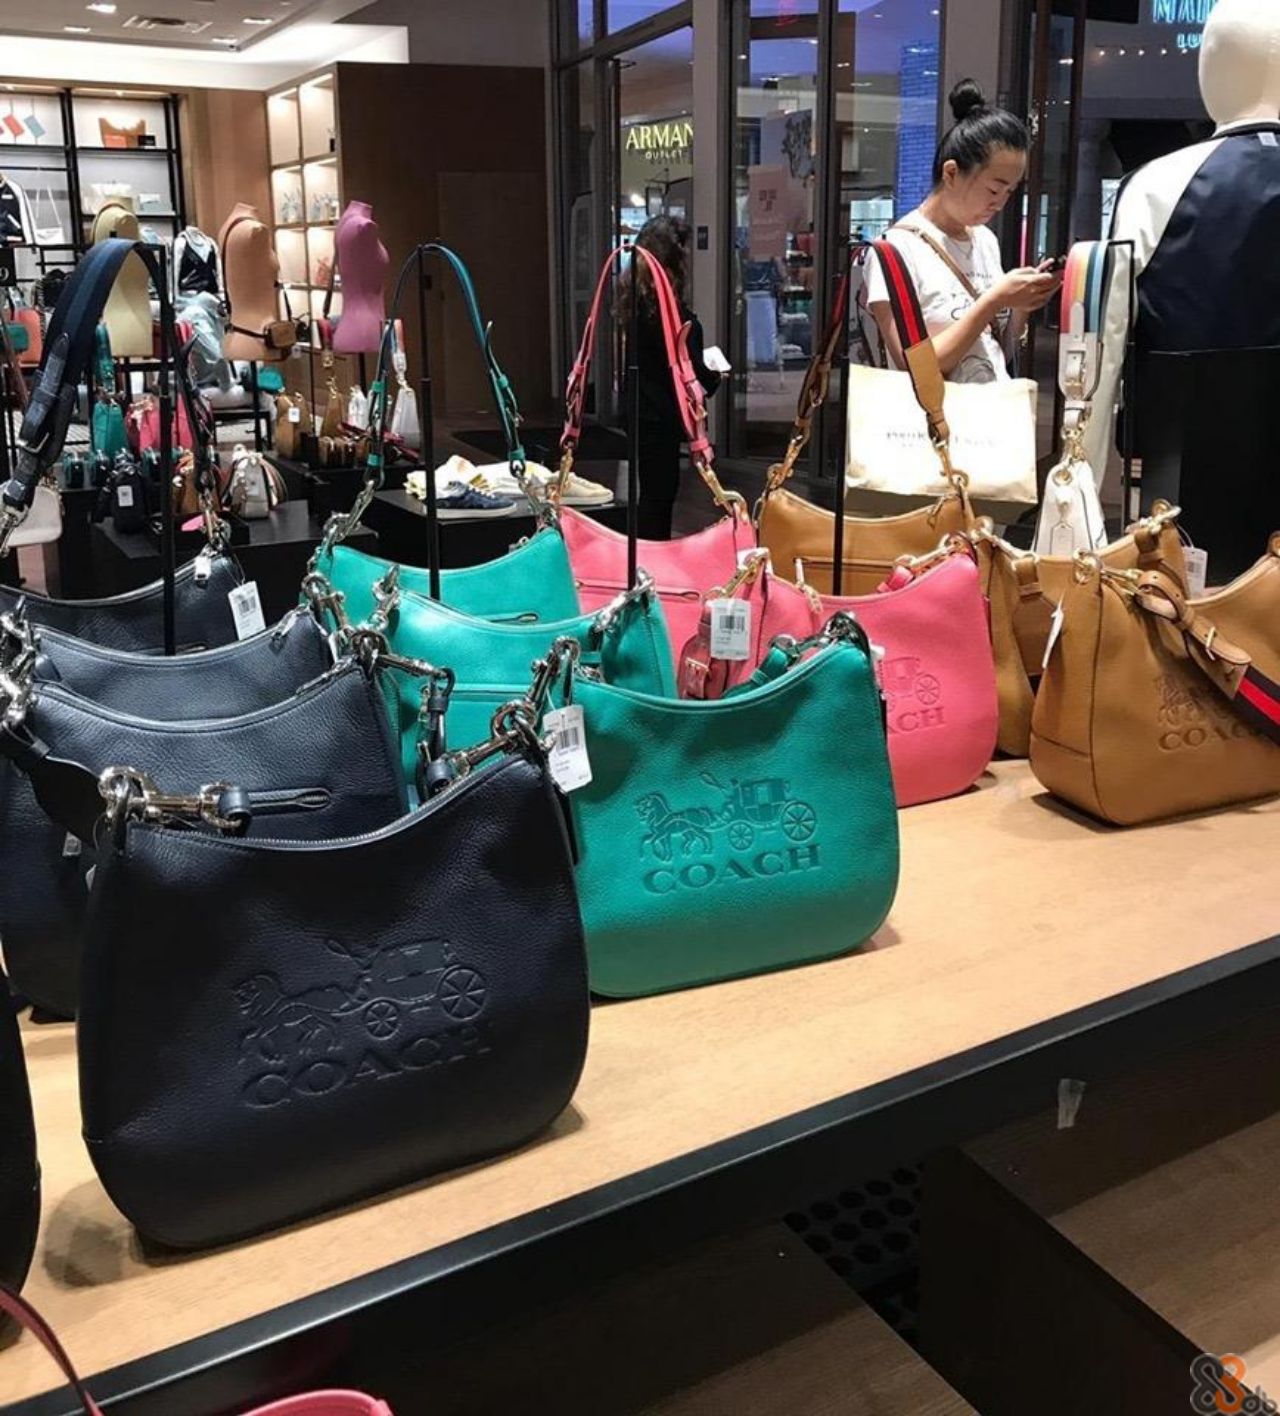 ARMAN ον CH COA ACH  Handbag,Bag,Shopping,Fashion accessory,Retail